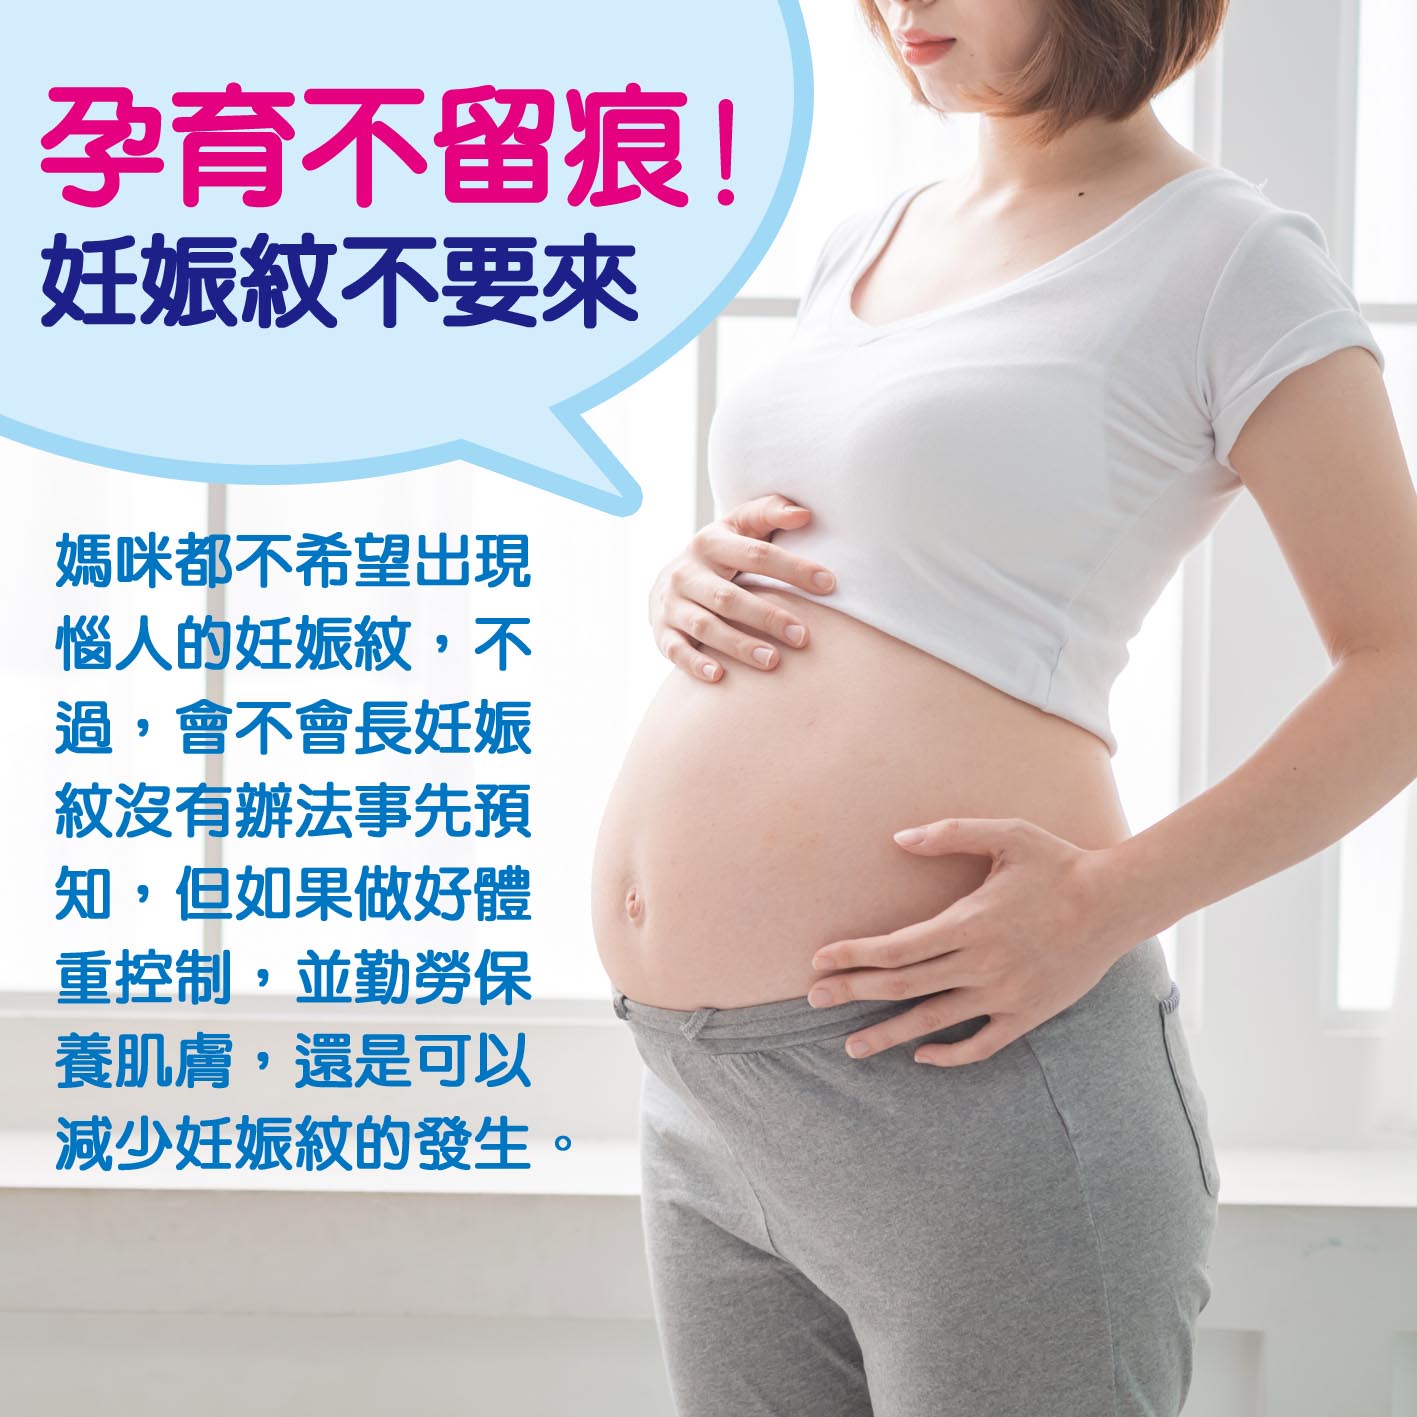 懷孕第16週: 孕育不留痕! 妊娠紋不要來.jpg